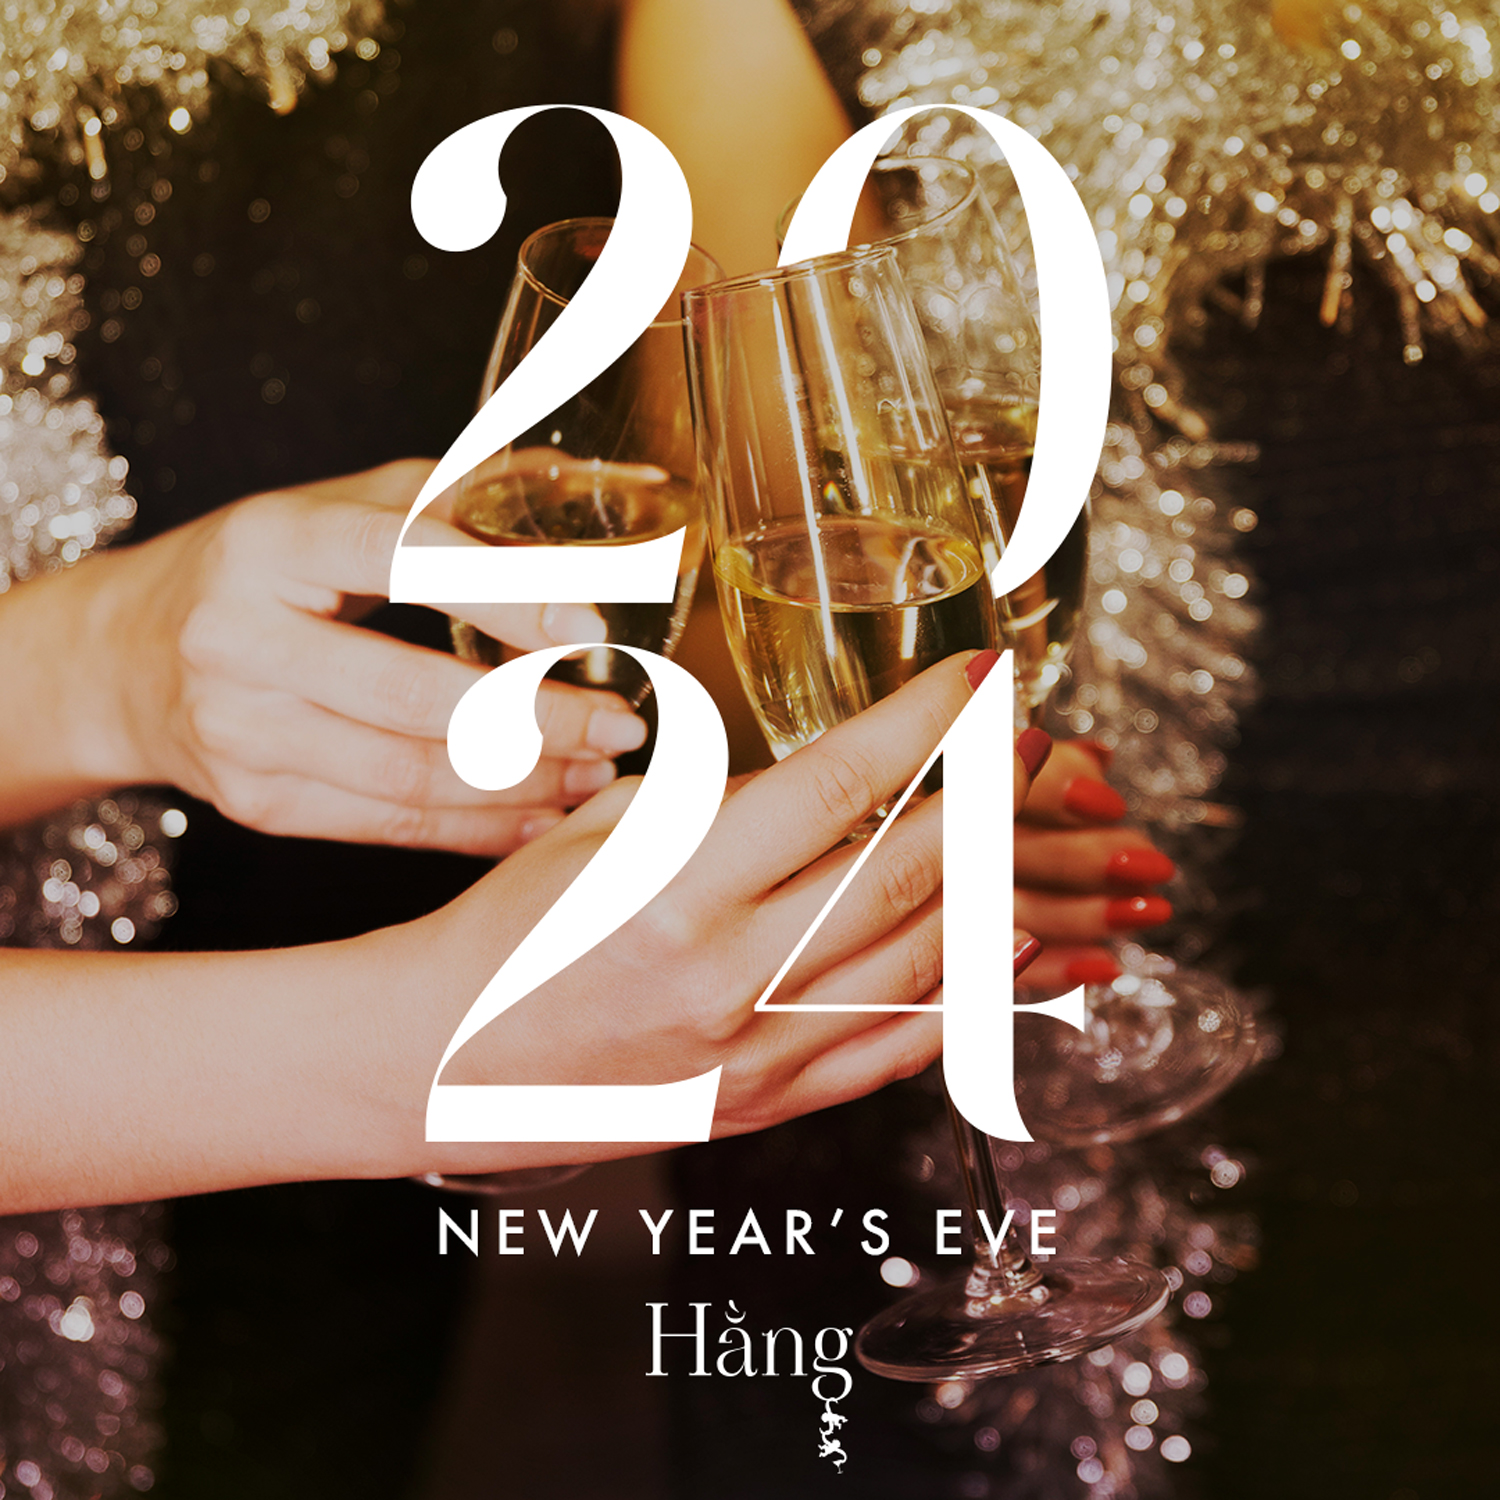 New Year's Eve at Hang Bar